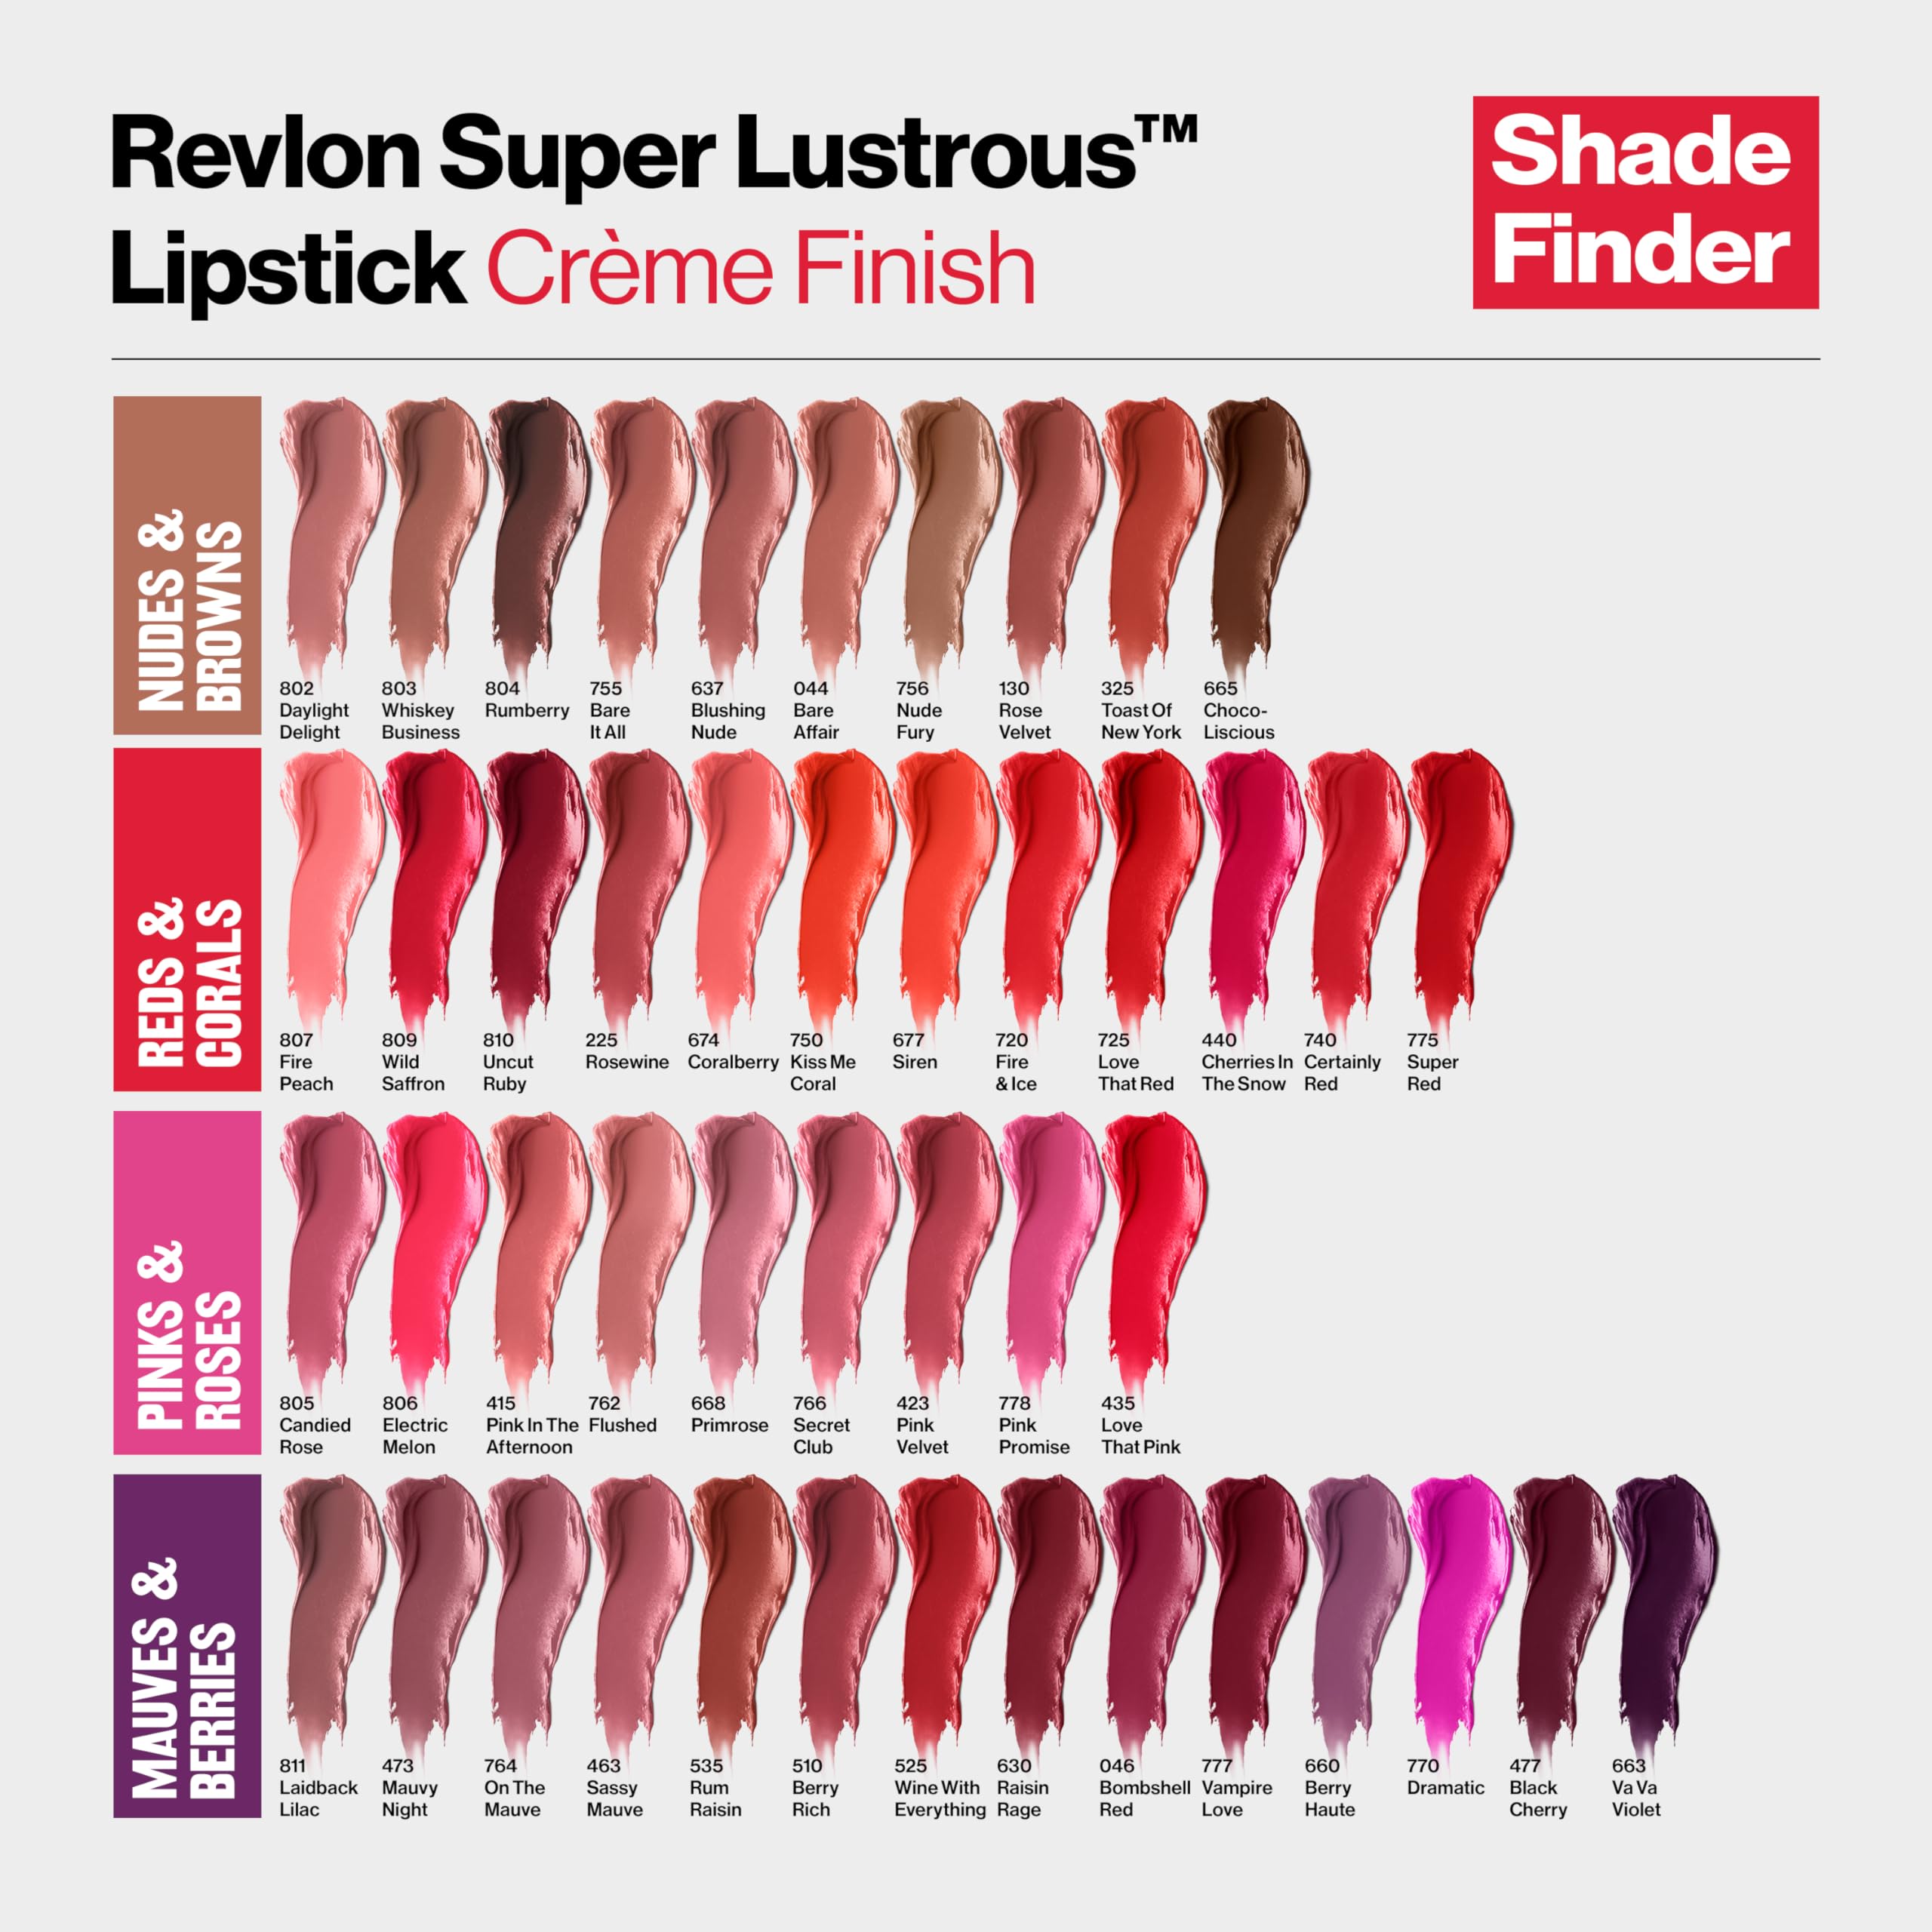 REVLON Lipstick, Super Lustrous Lipstick, Creamy Formula For Soft, Fuller-Looking Lips, Moisturized Feel, 803 Whiskey Business, 0.15 oz